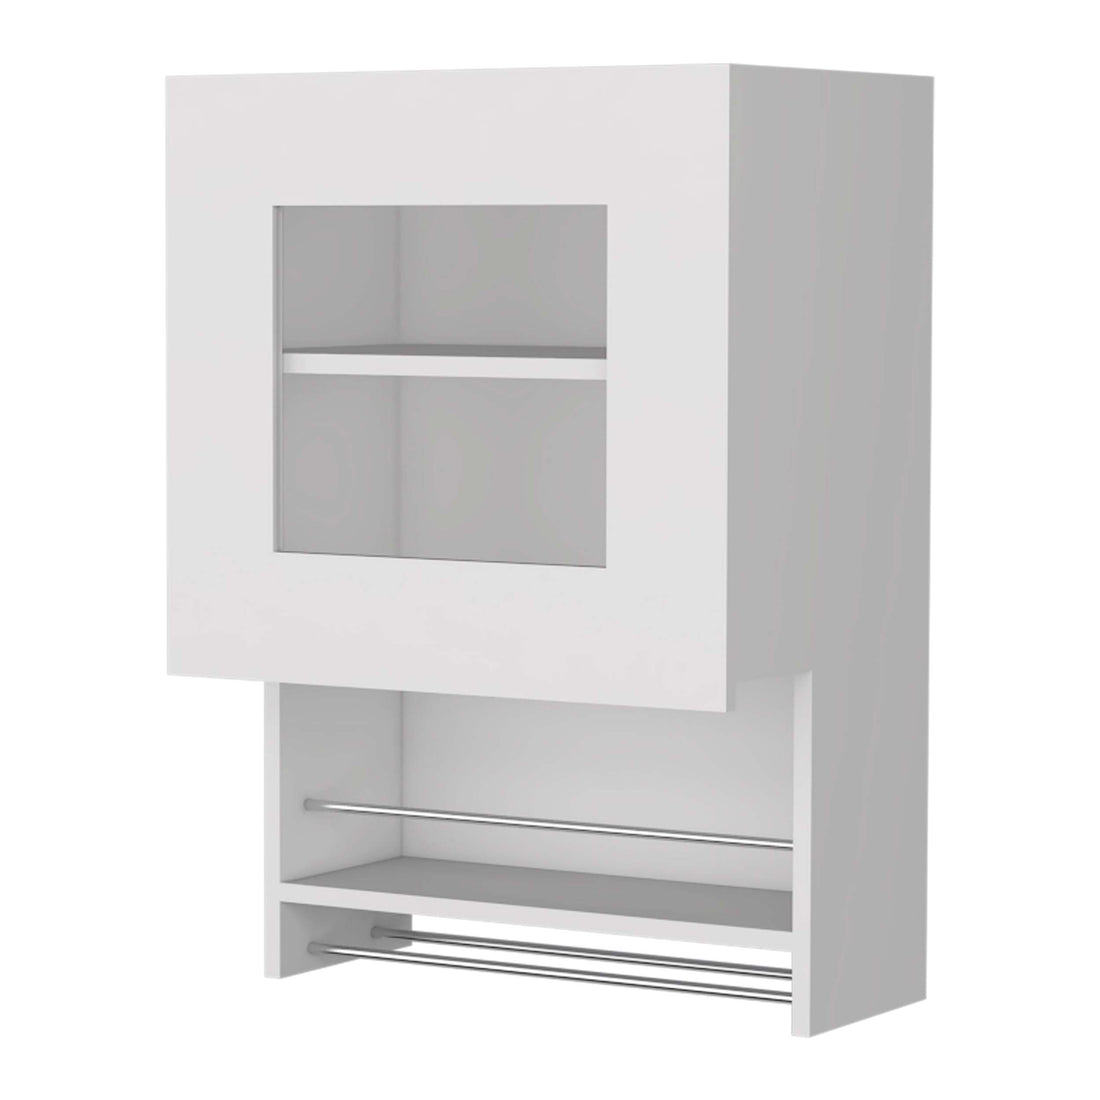 Sunriver Corner Shelf With Cabinet, 3 Tier Shelf